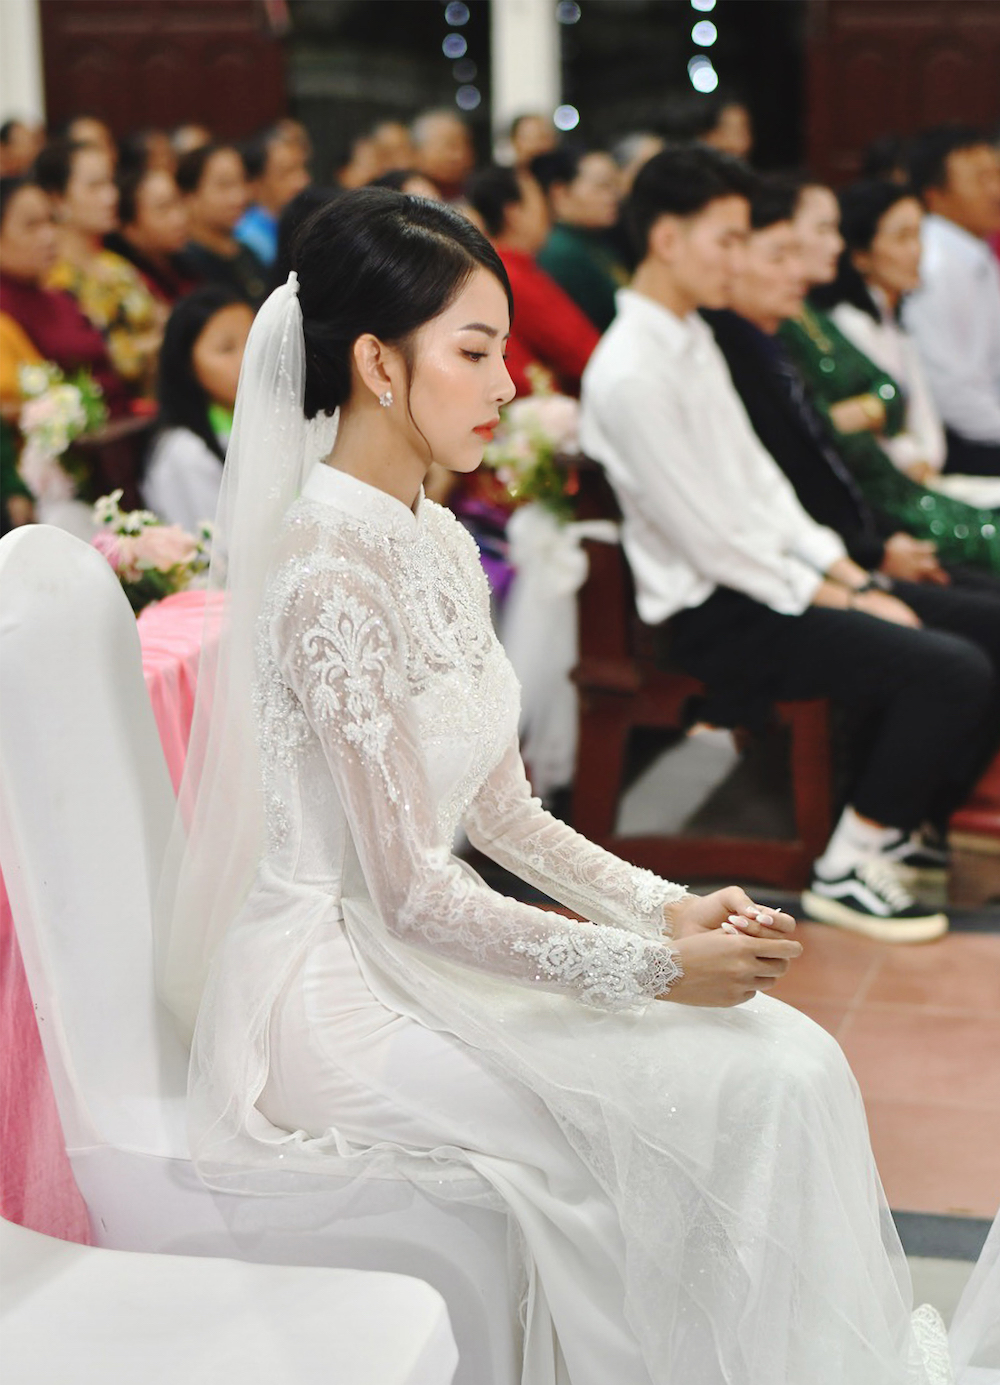 Hé lộ ảnh cưới đẹp lung linh của Phan Mạnh Quỳnh và bà xã Khánh Vy